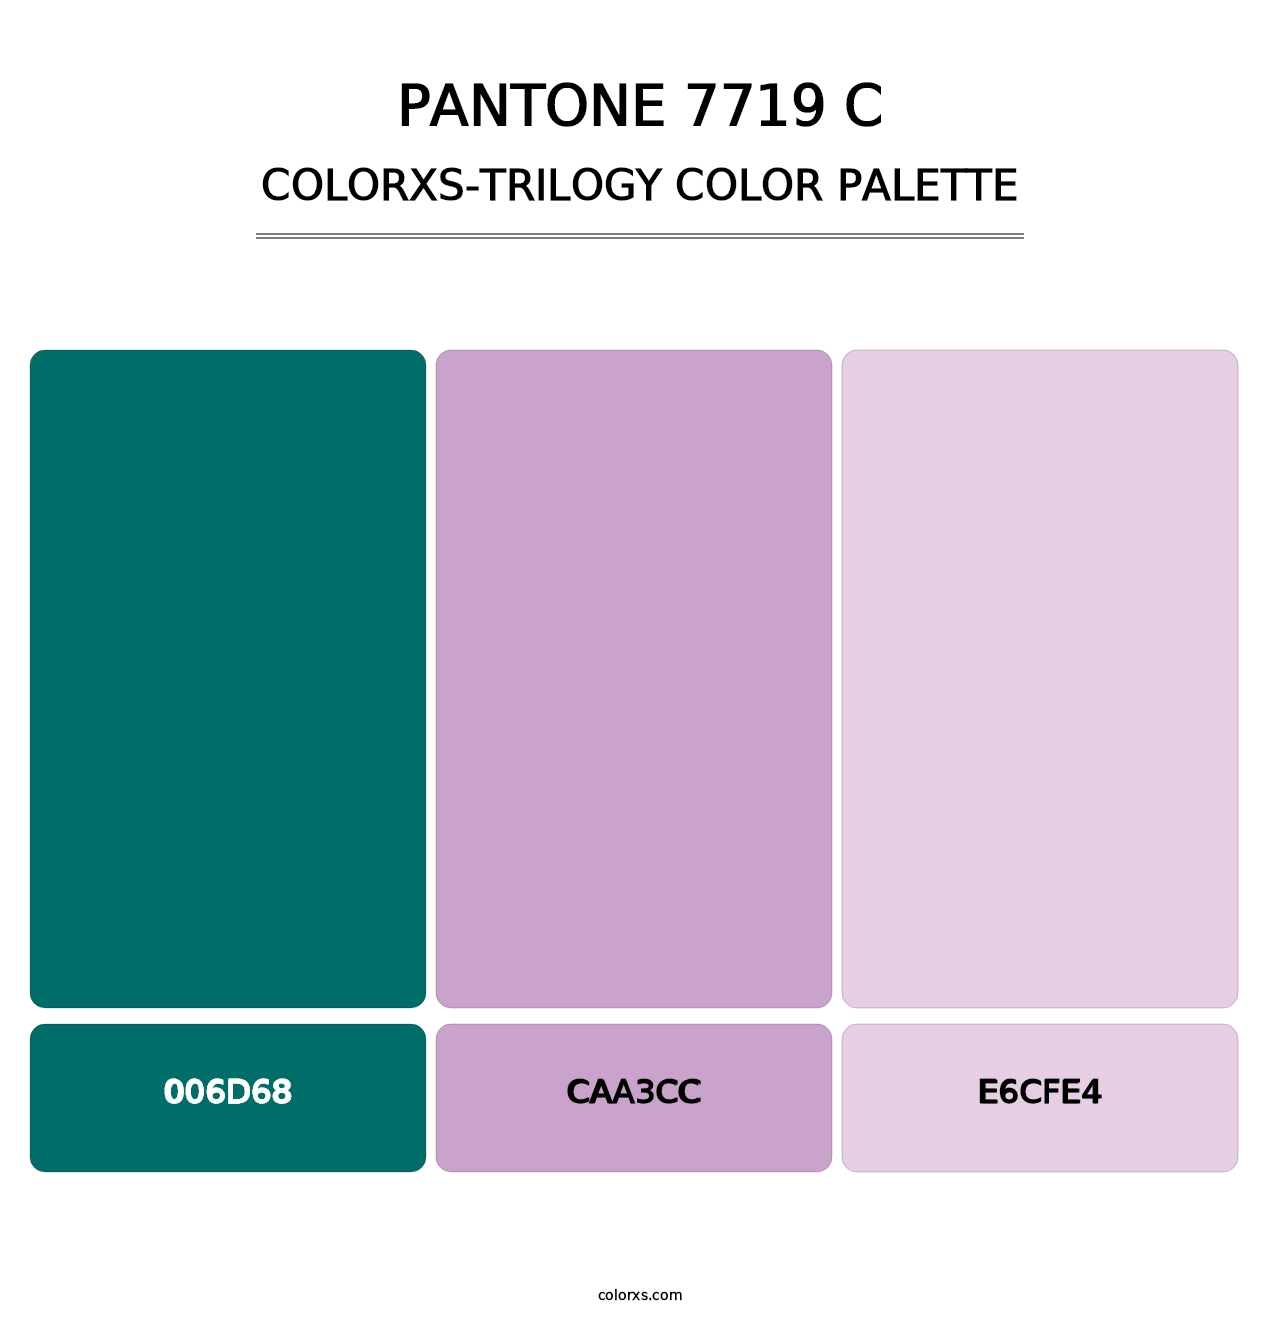 PANTONE 7719 C - Colorxs Trilogy Palette